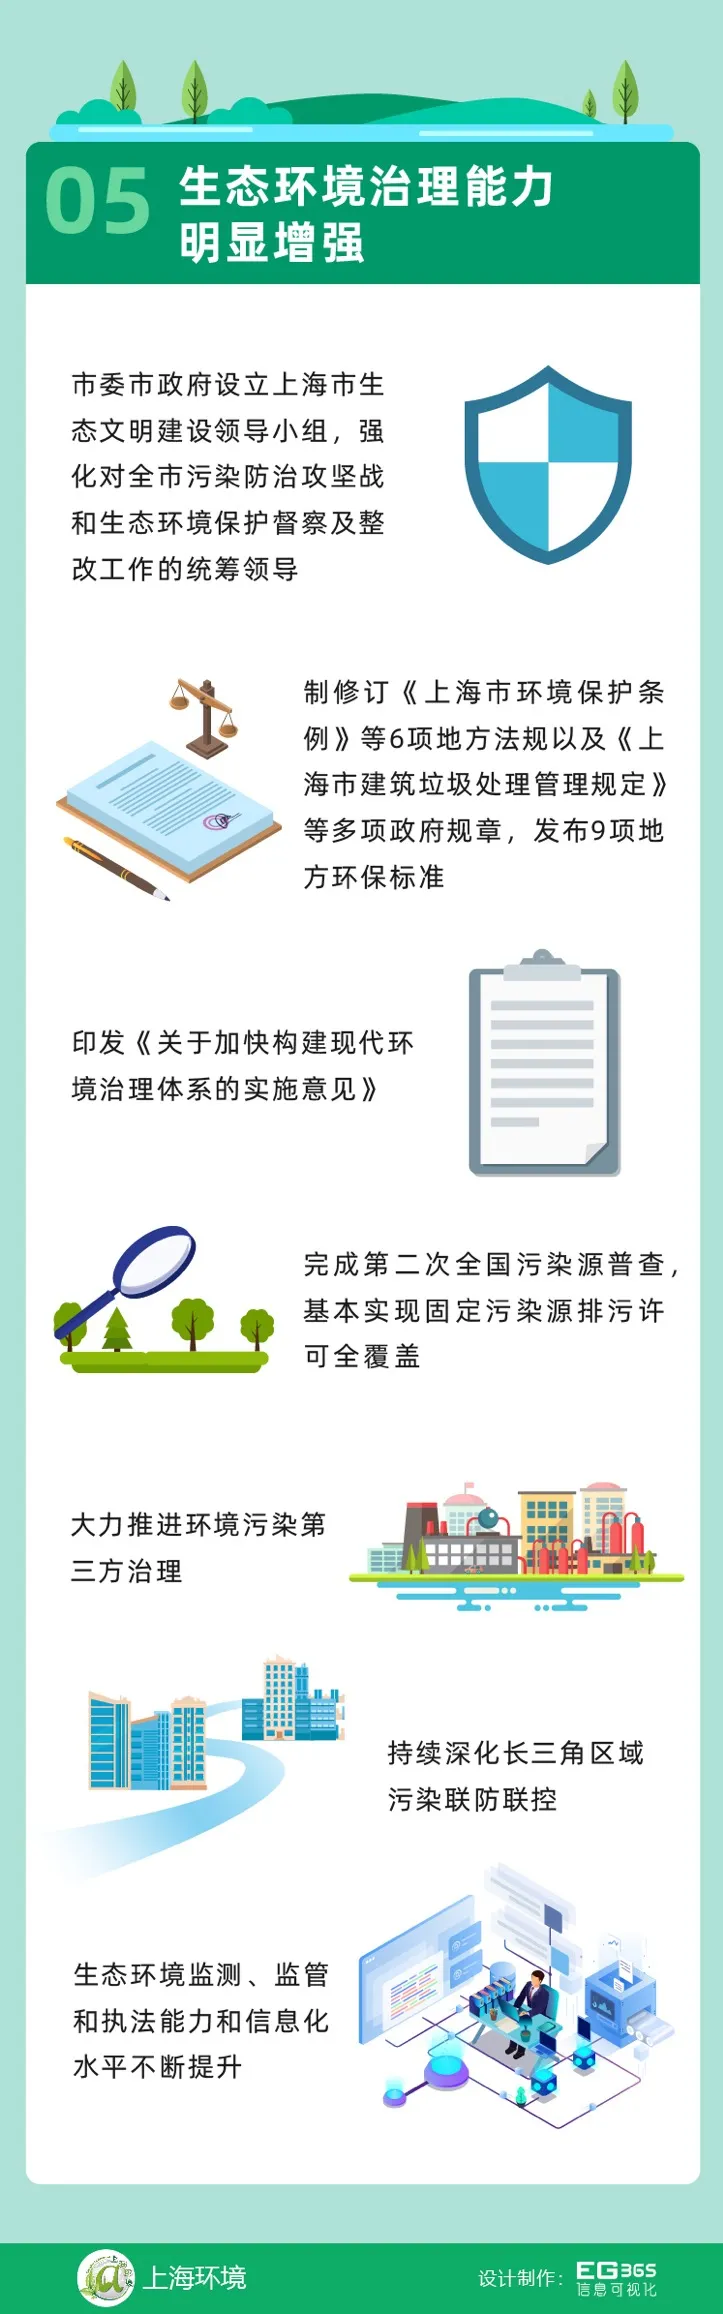 回顾“十三五”，展望“十四五” 上海绿色发展之路将这样走 行业热点 第8张